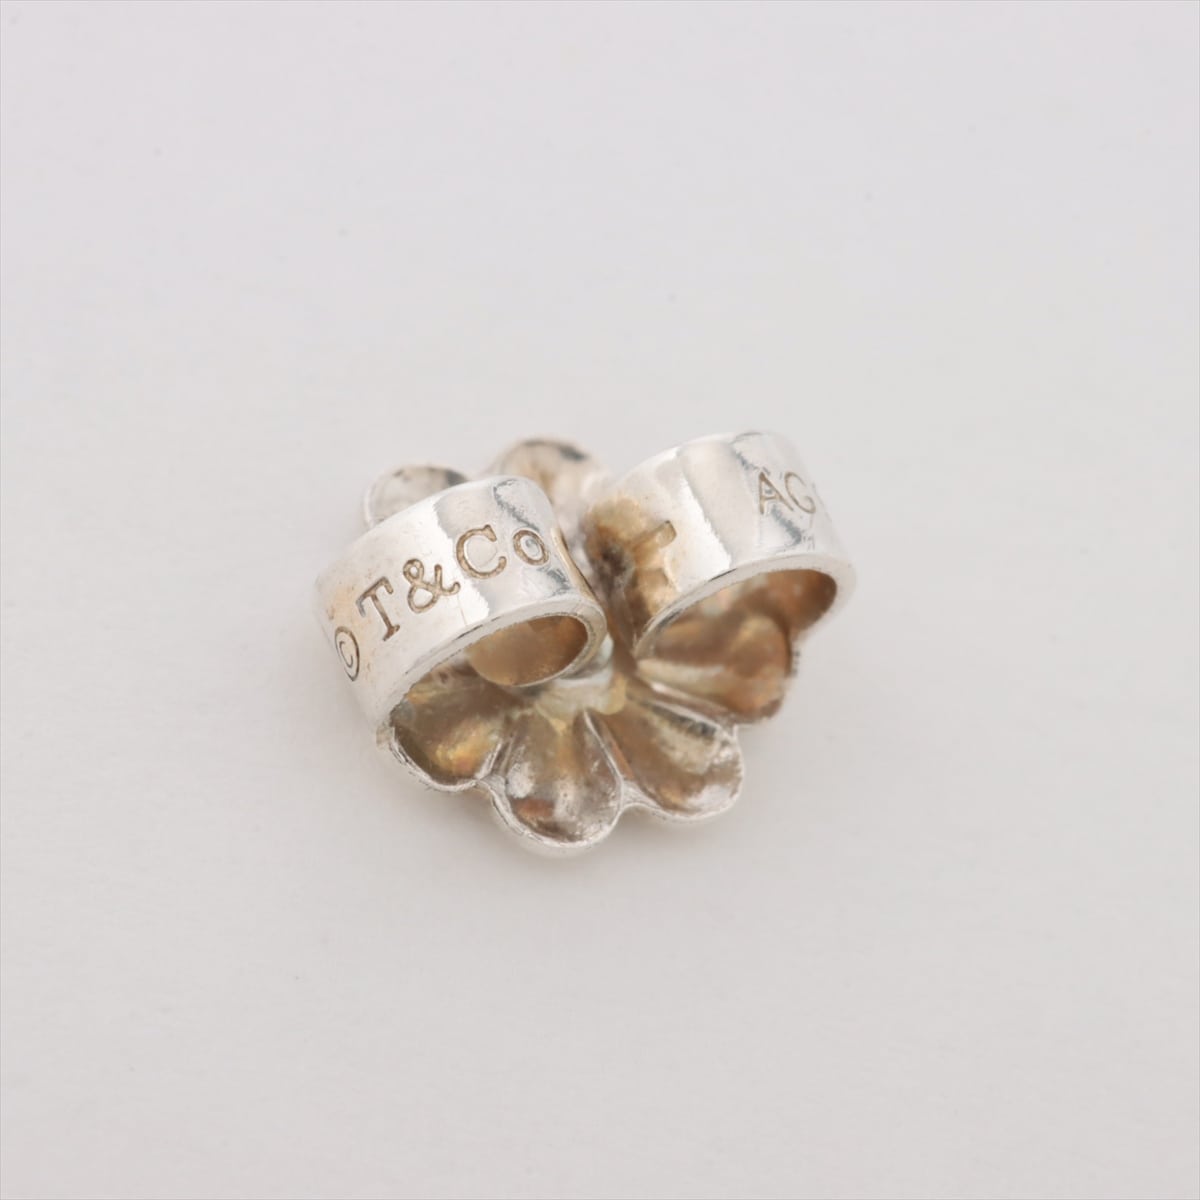 Tiffany Open Heart Piercing jewelry (for both ears) 925 5.3g Silver